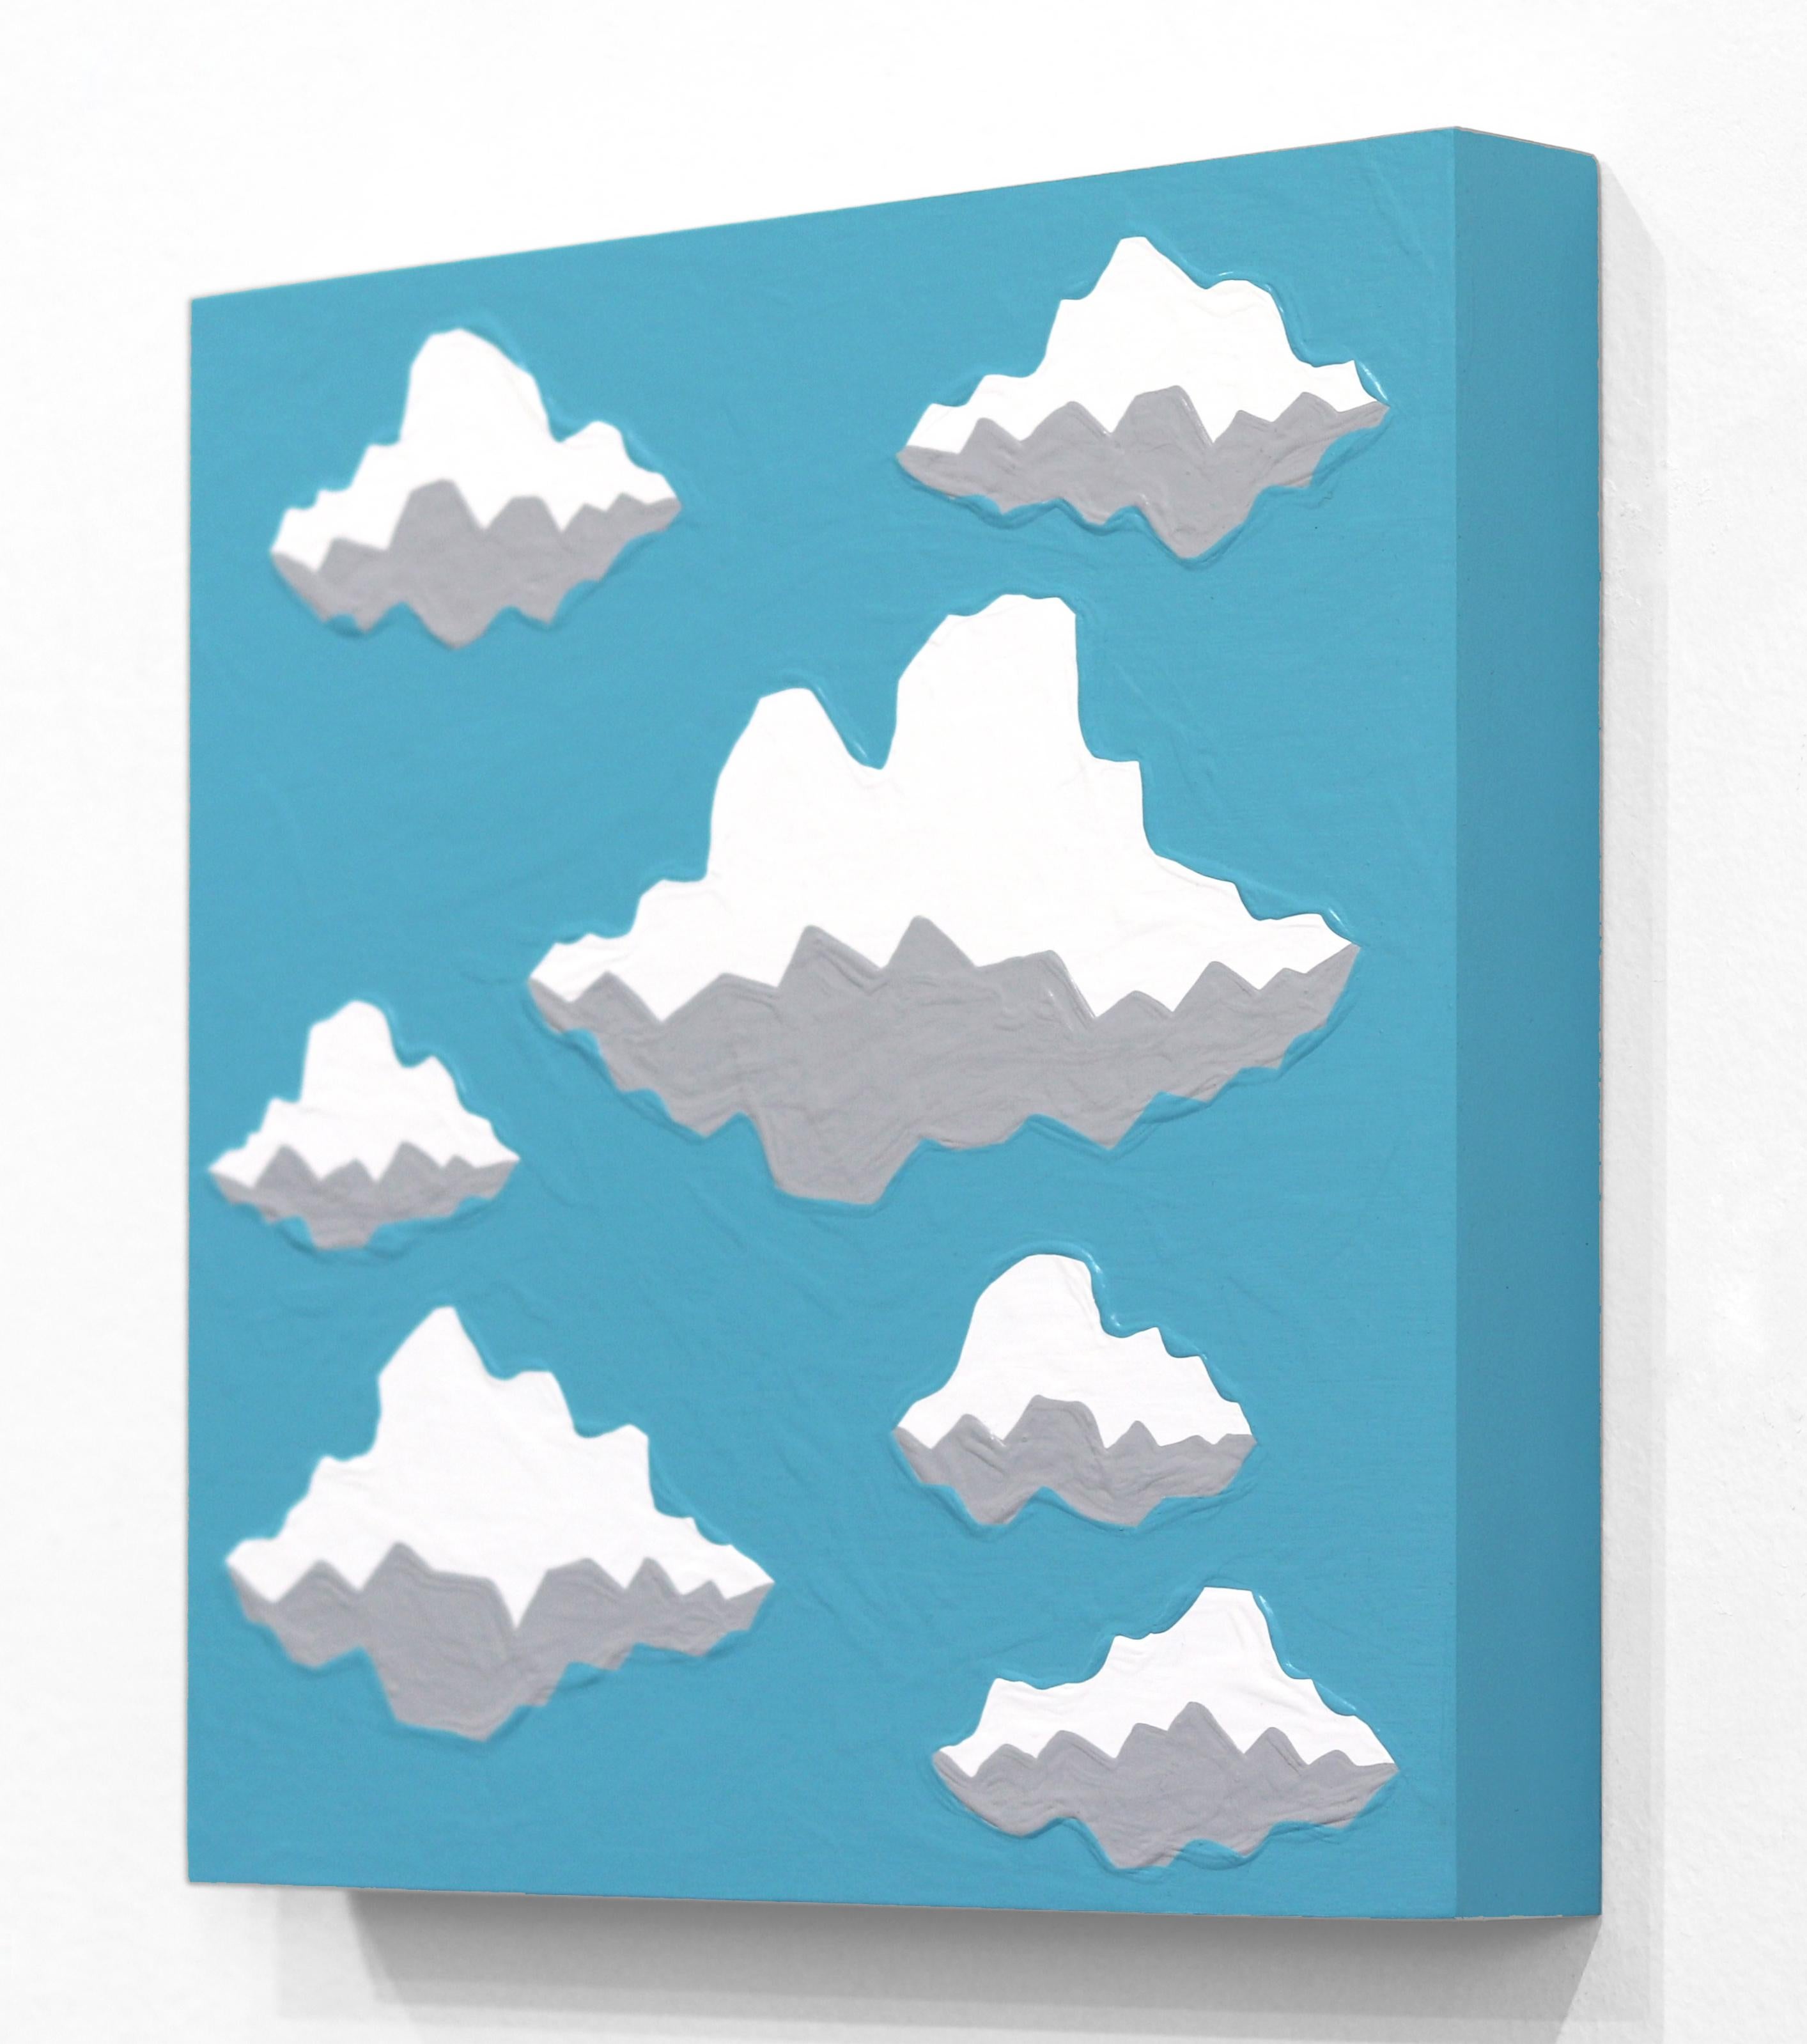 Cloud Over - Vibrant Blue Southwest Skyscape Landscape Pop Art Original Painting For Sale 2